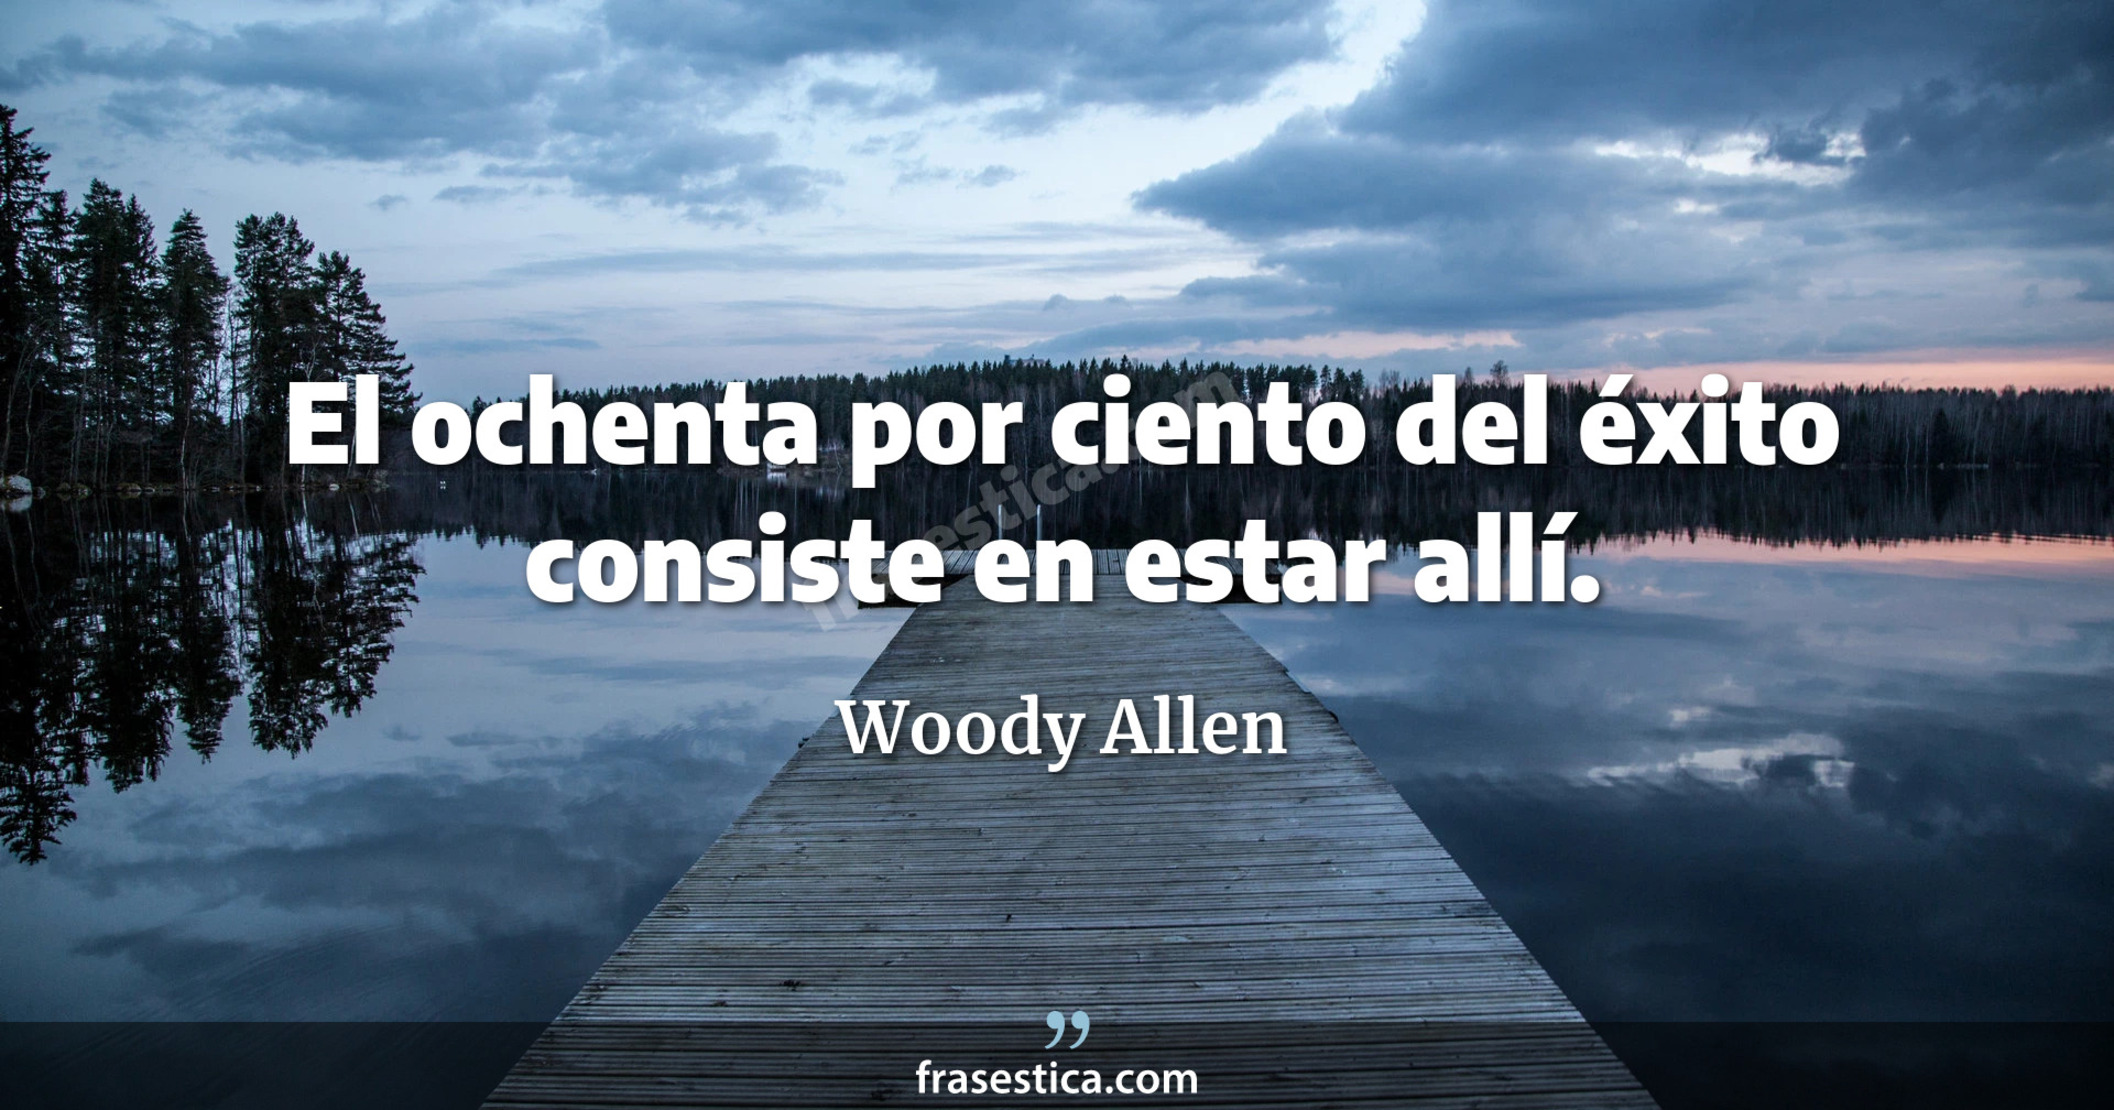 El ochenta por ciento del éxito consiste en estar allí. - Woody Allen